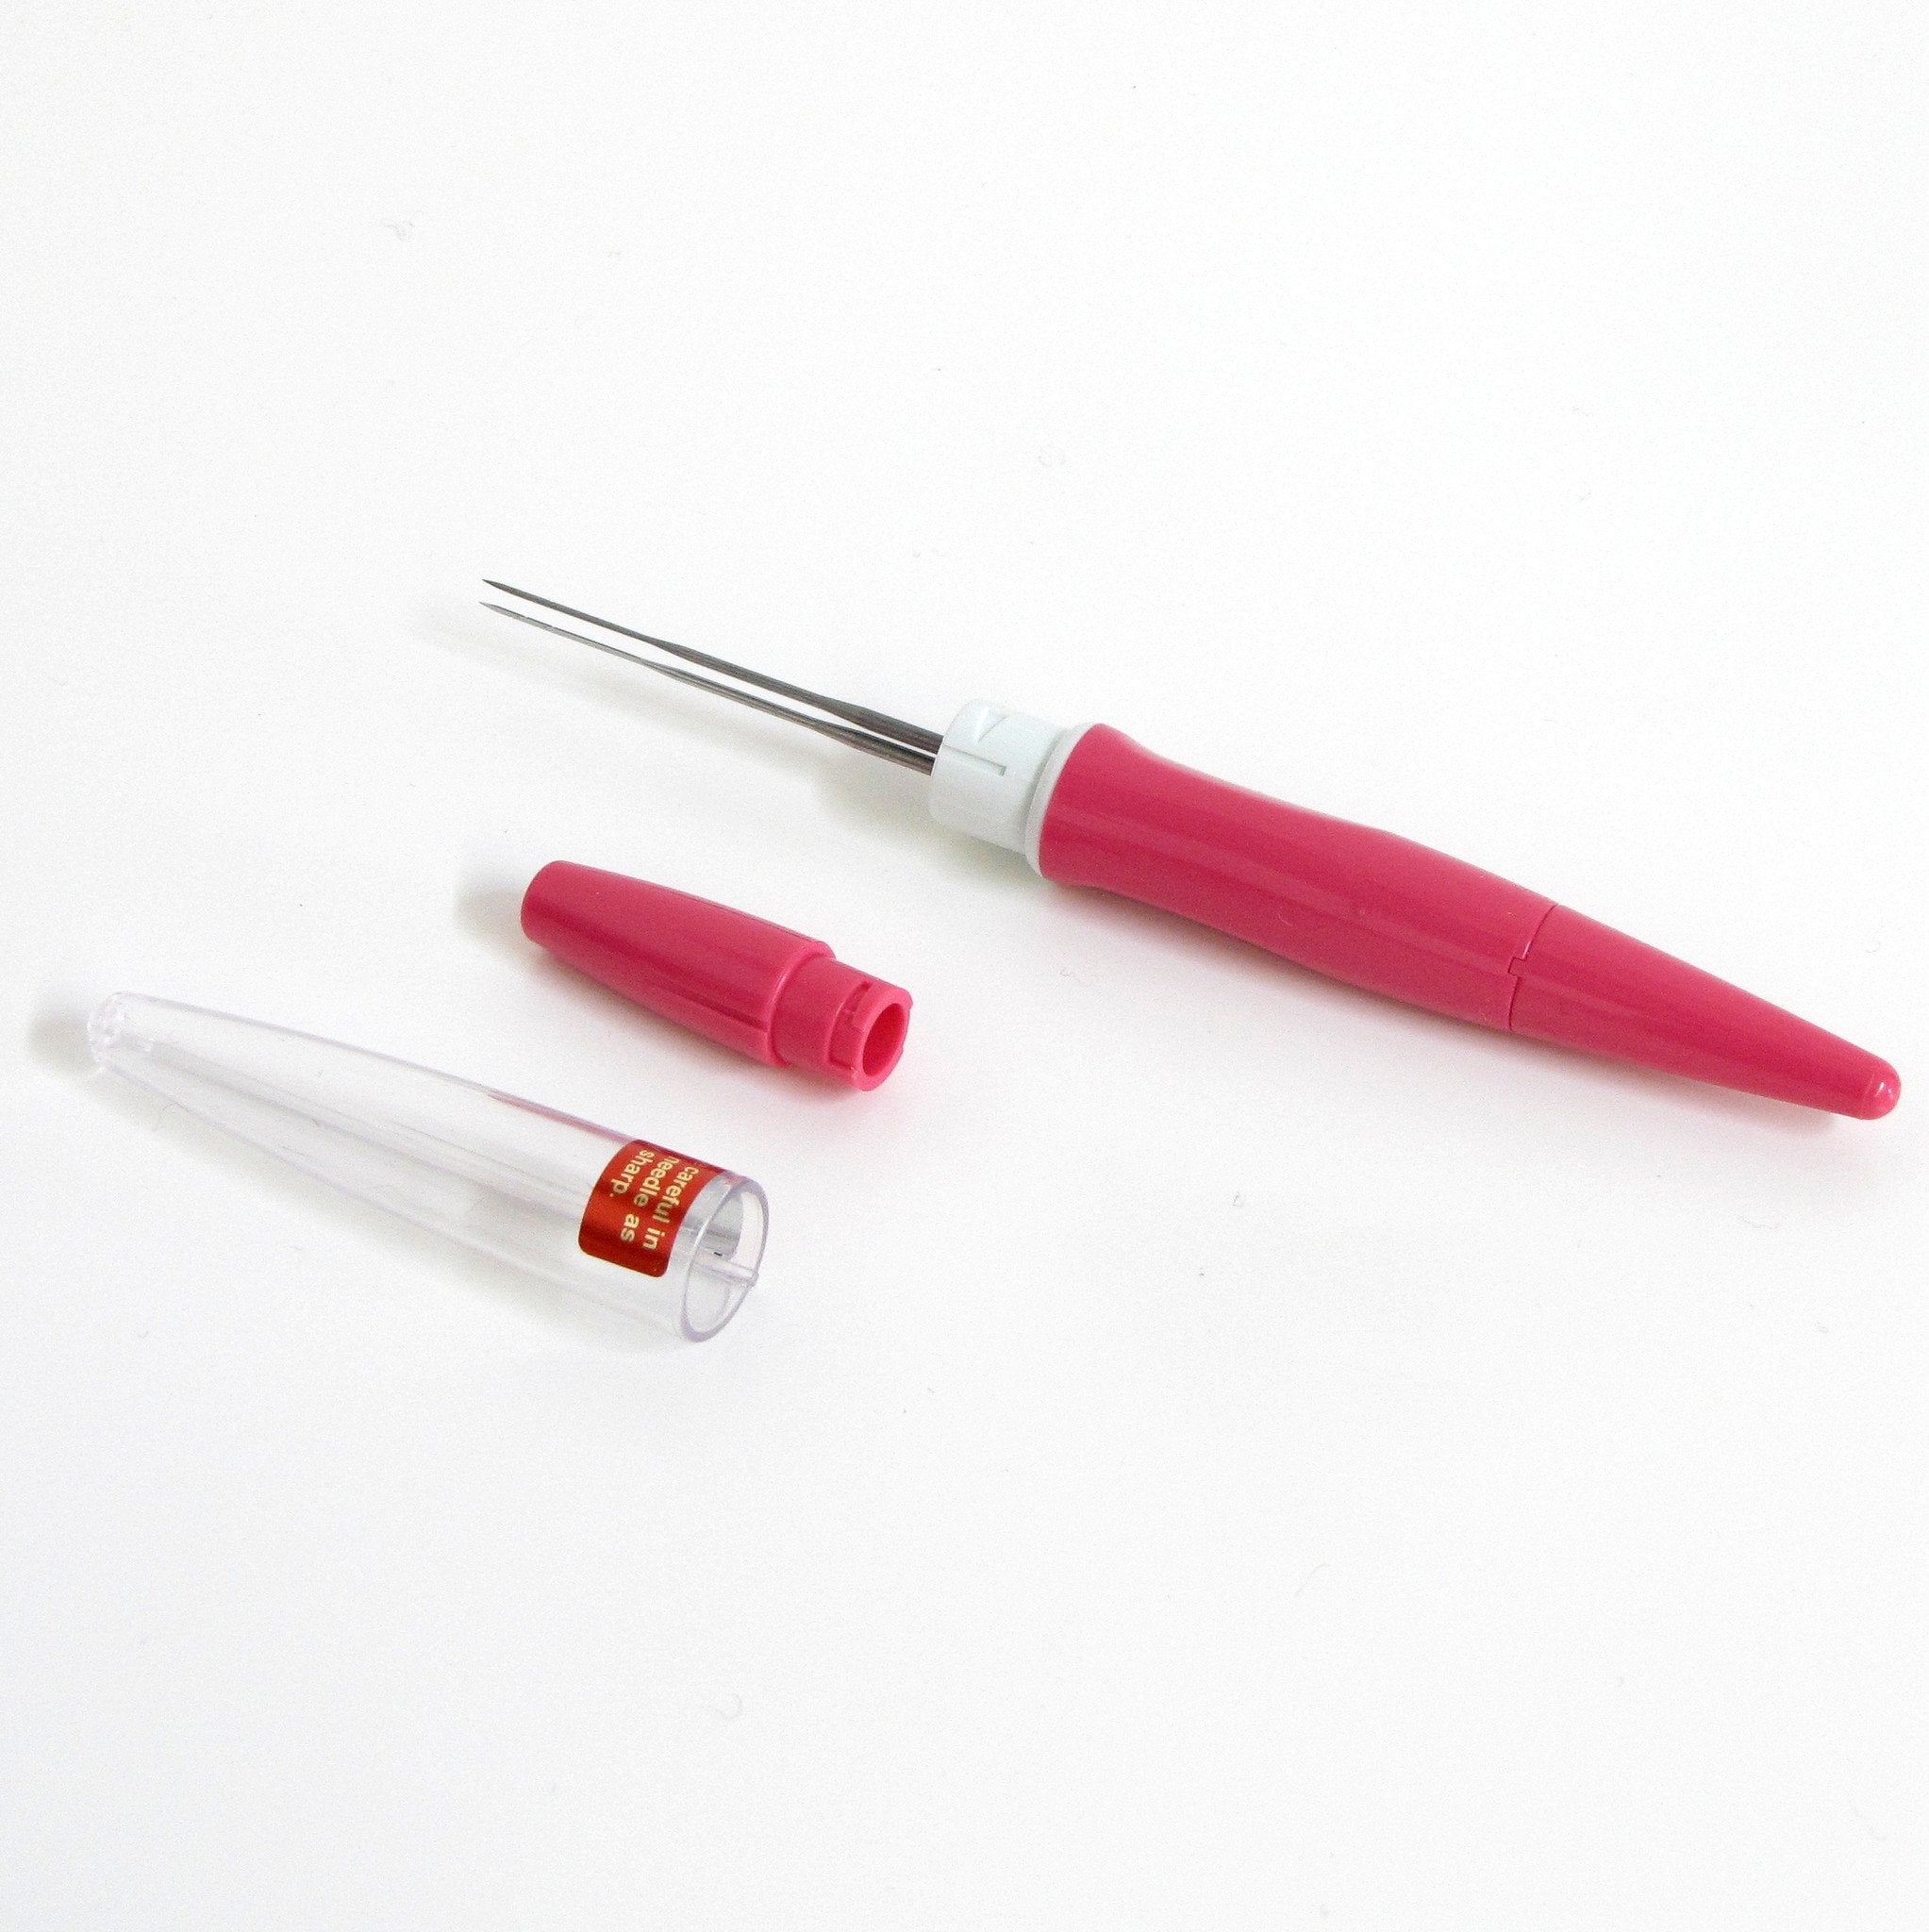 Pen Style Needle Felting Tool - Holds 3 Needles